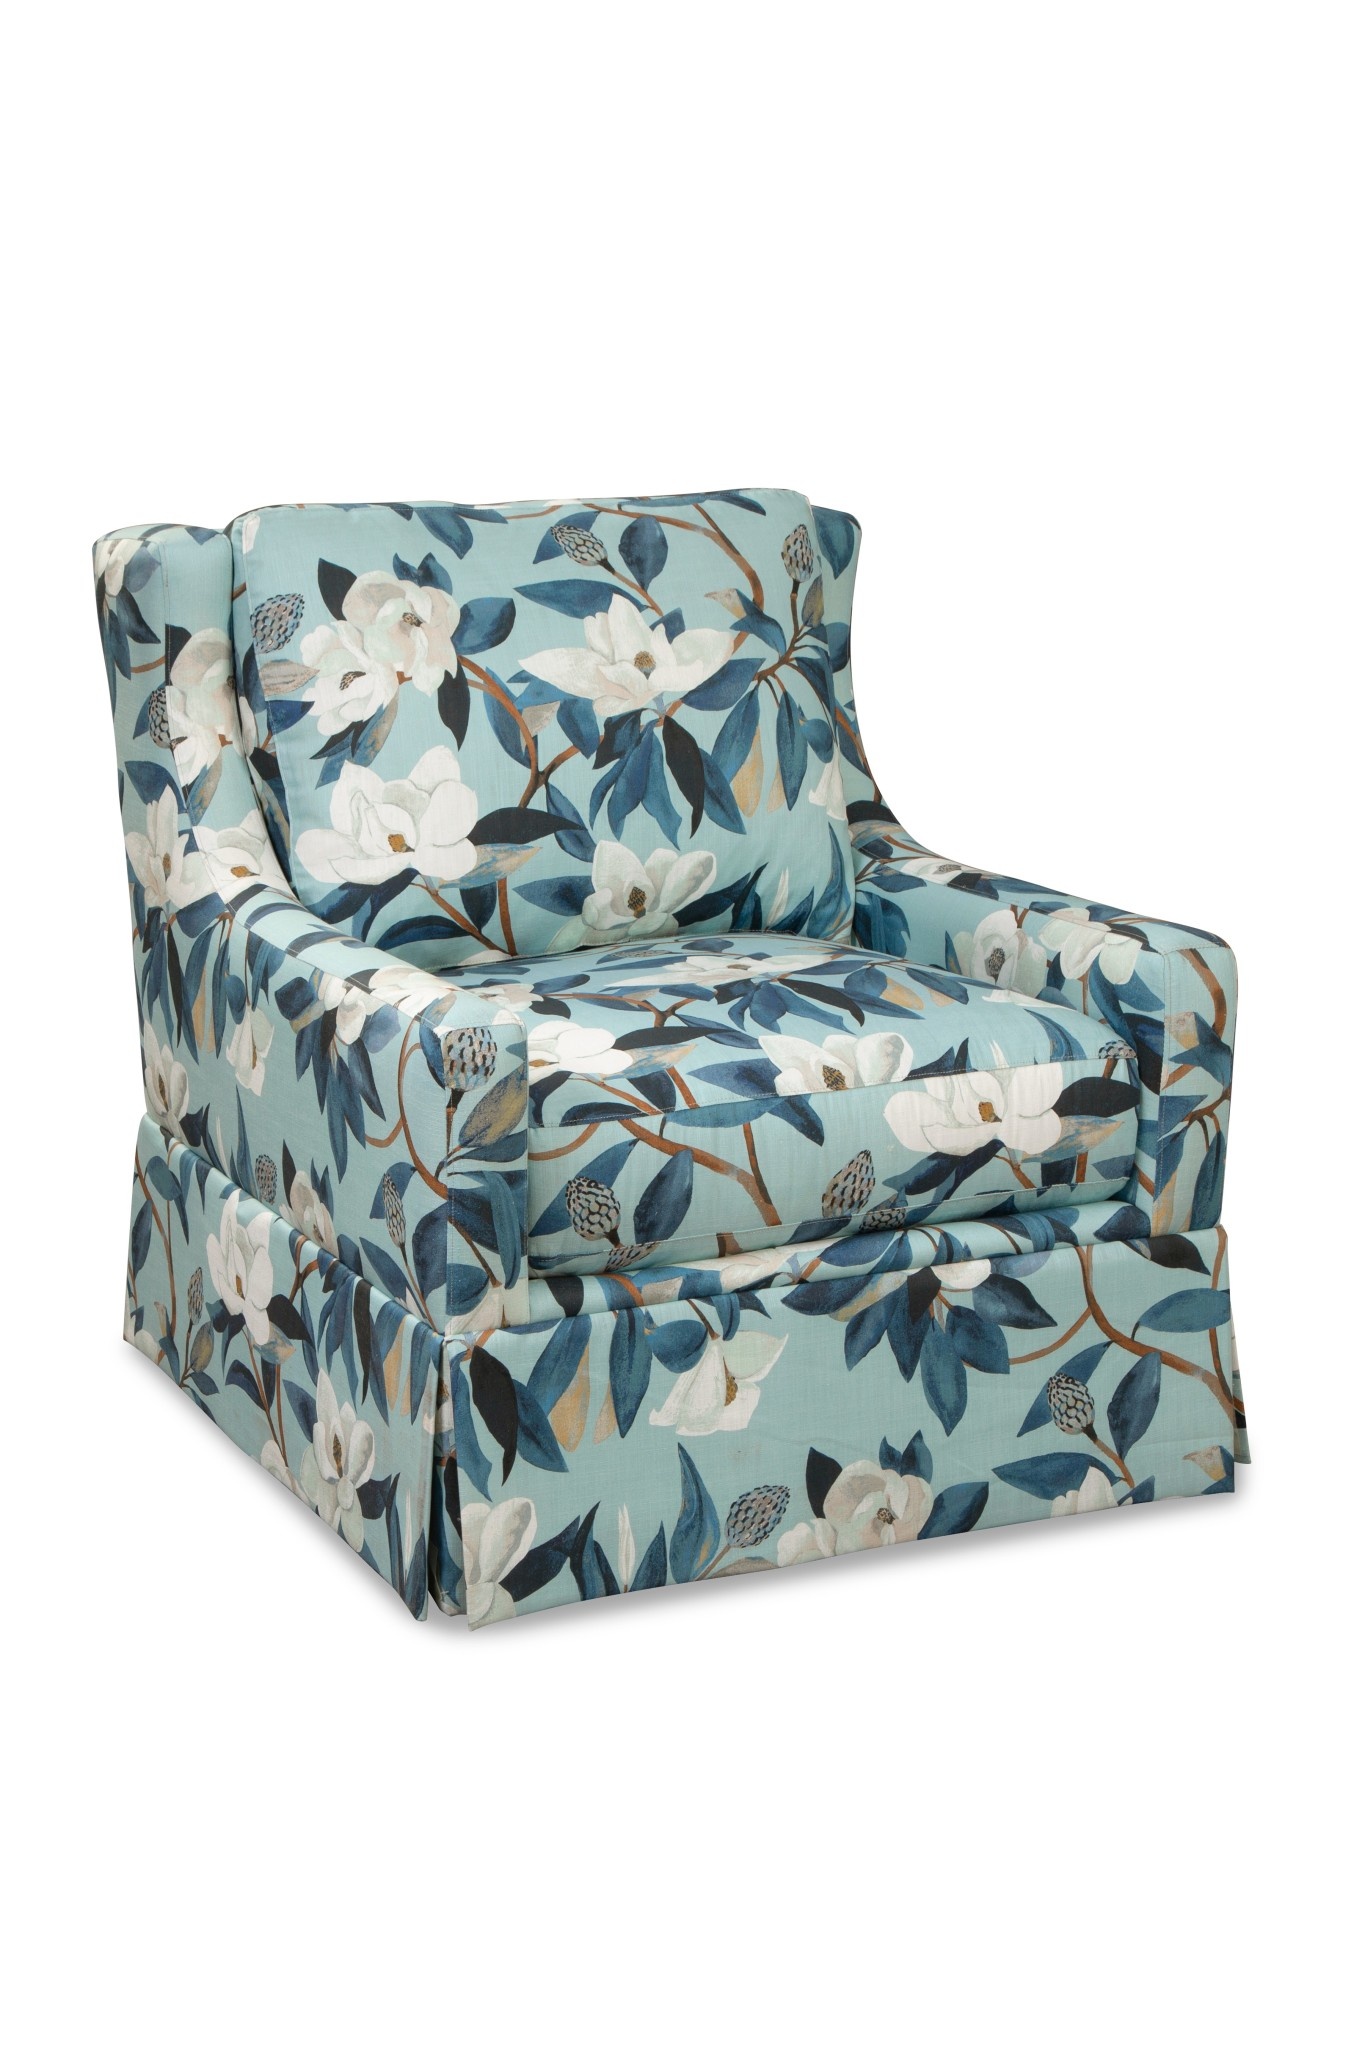 Craftmaster Furniture P915910BD Paula Deen Chair